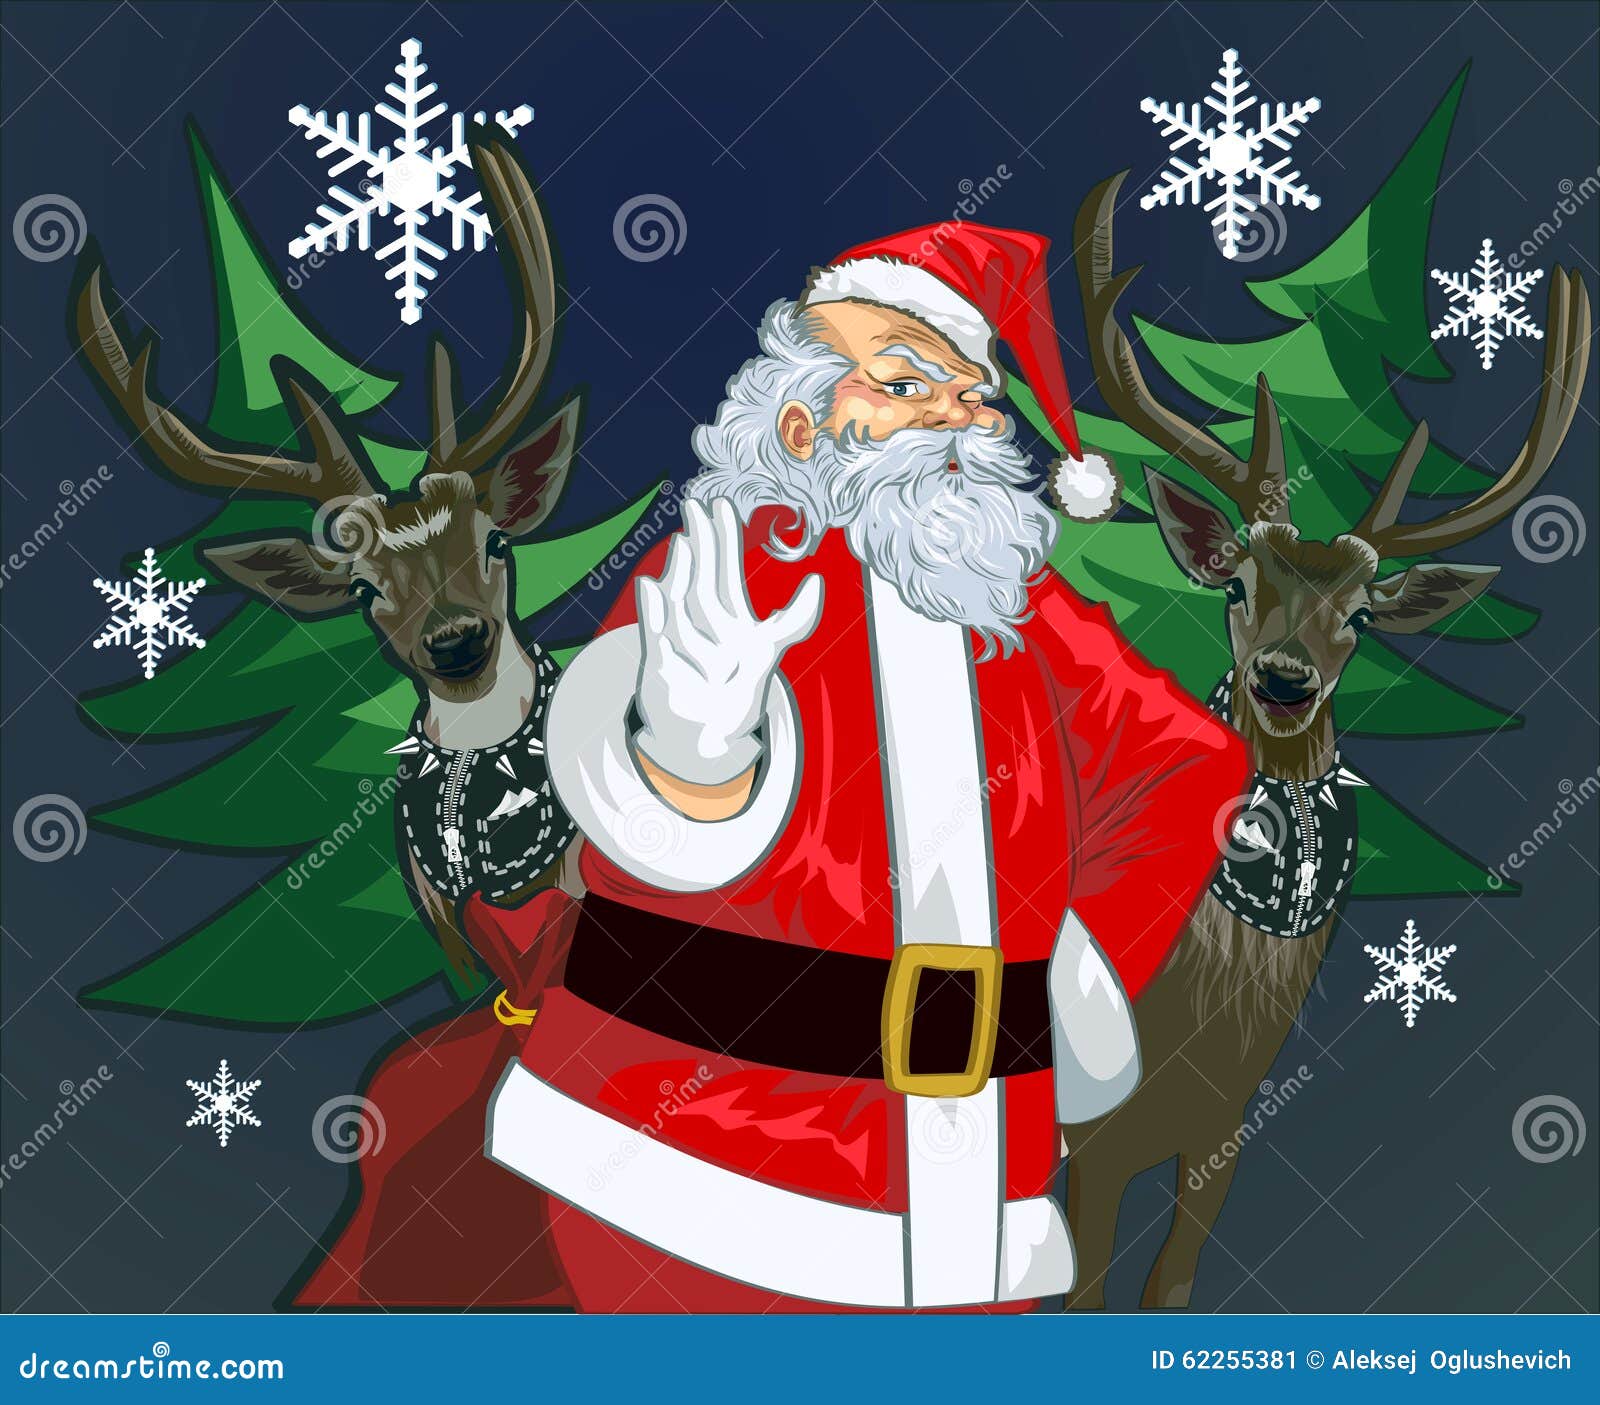 卡通圣诞老人和驯鹿矢量素材免费下载 - 觅知网